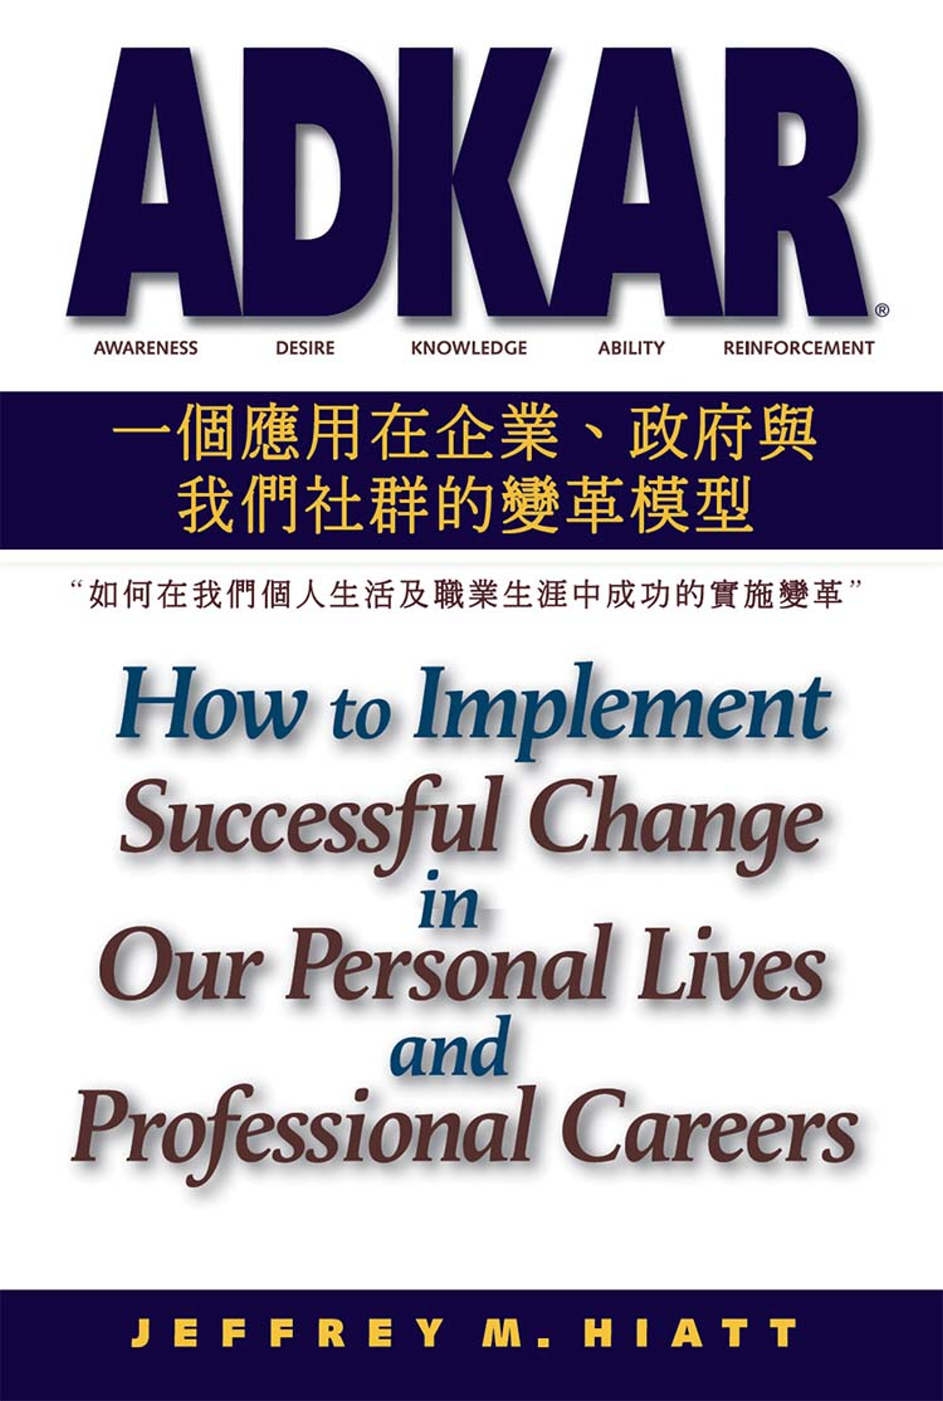 ADKAR：一個應用在企業、政府和我們社群的變革模型-如何在我們個人生活及職業生涯中成功的實施變革